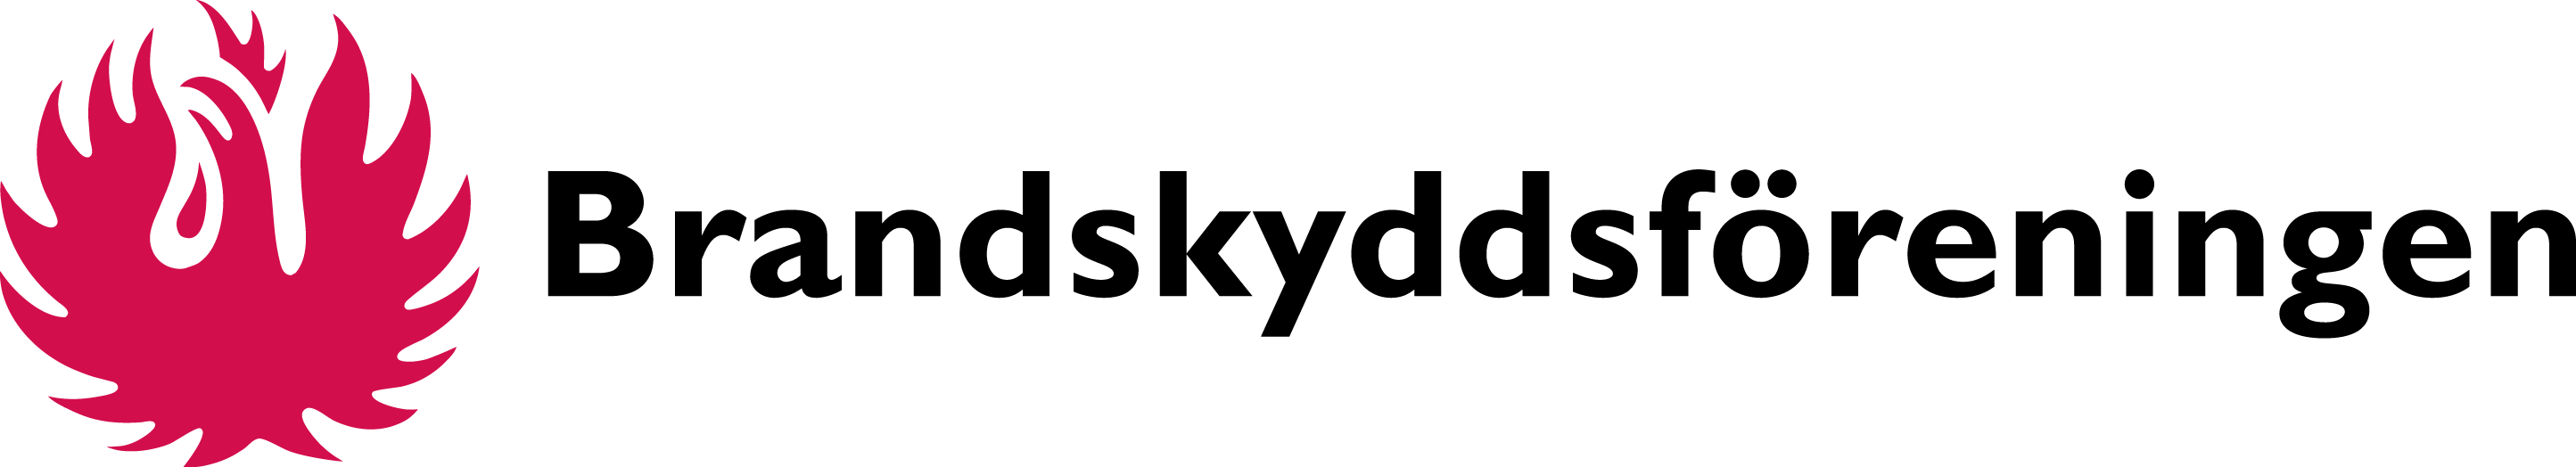 Brandskyddsforeningen_Logo_RGB.png